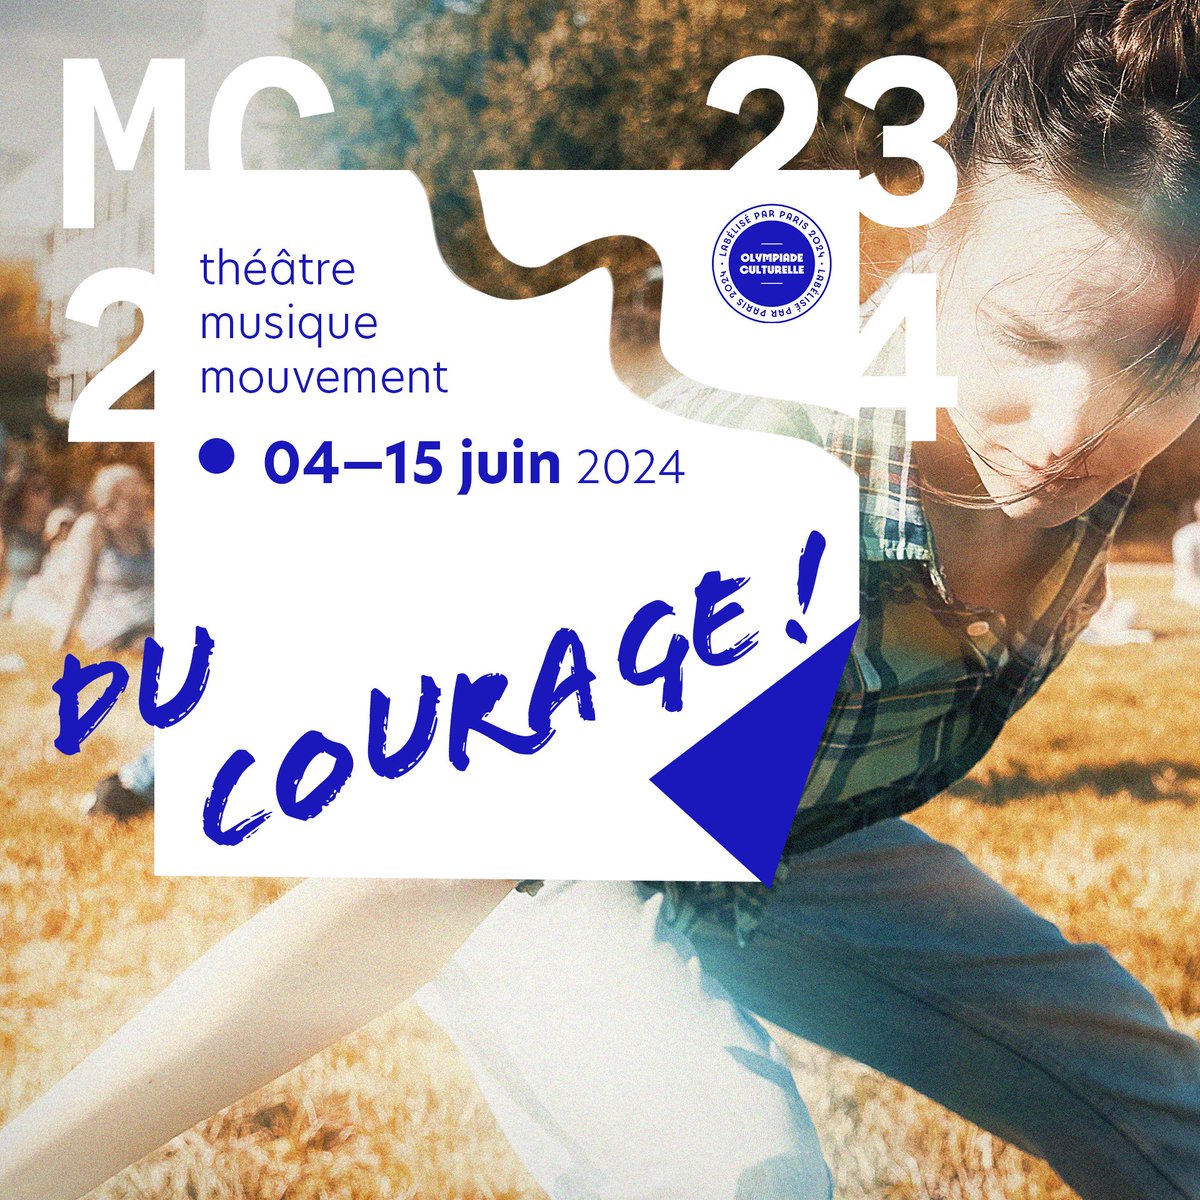 DU COURAGE ! est un projet pluridisciplinaire, participatif porté par la MC2: Grenoble, dans le cadre de l’Olympiade culturelle depuis septembre 2022. Restitutions publiques en juin 2024 !👉Découvrir le projet: url-r.fr/zqfhR #olympiadesculturelles #ducourage